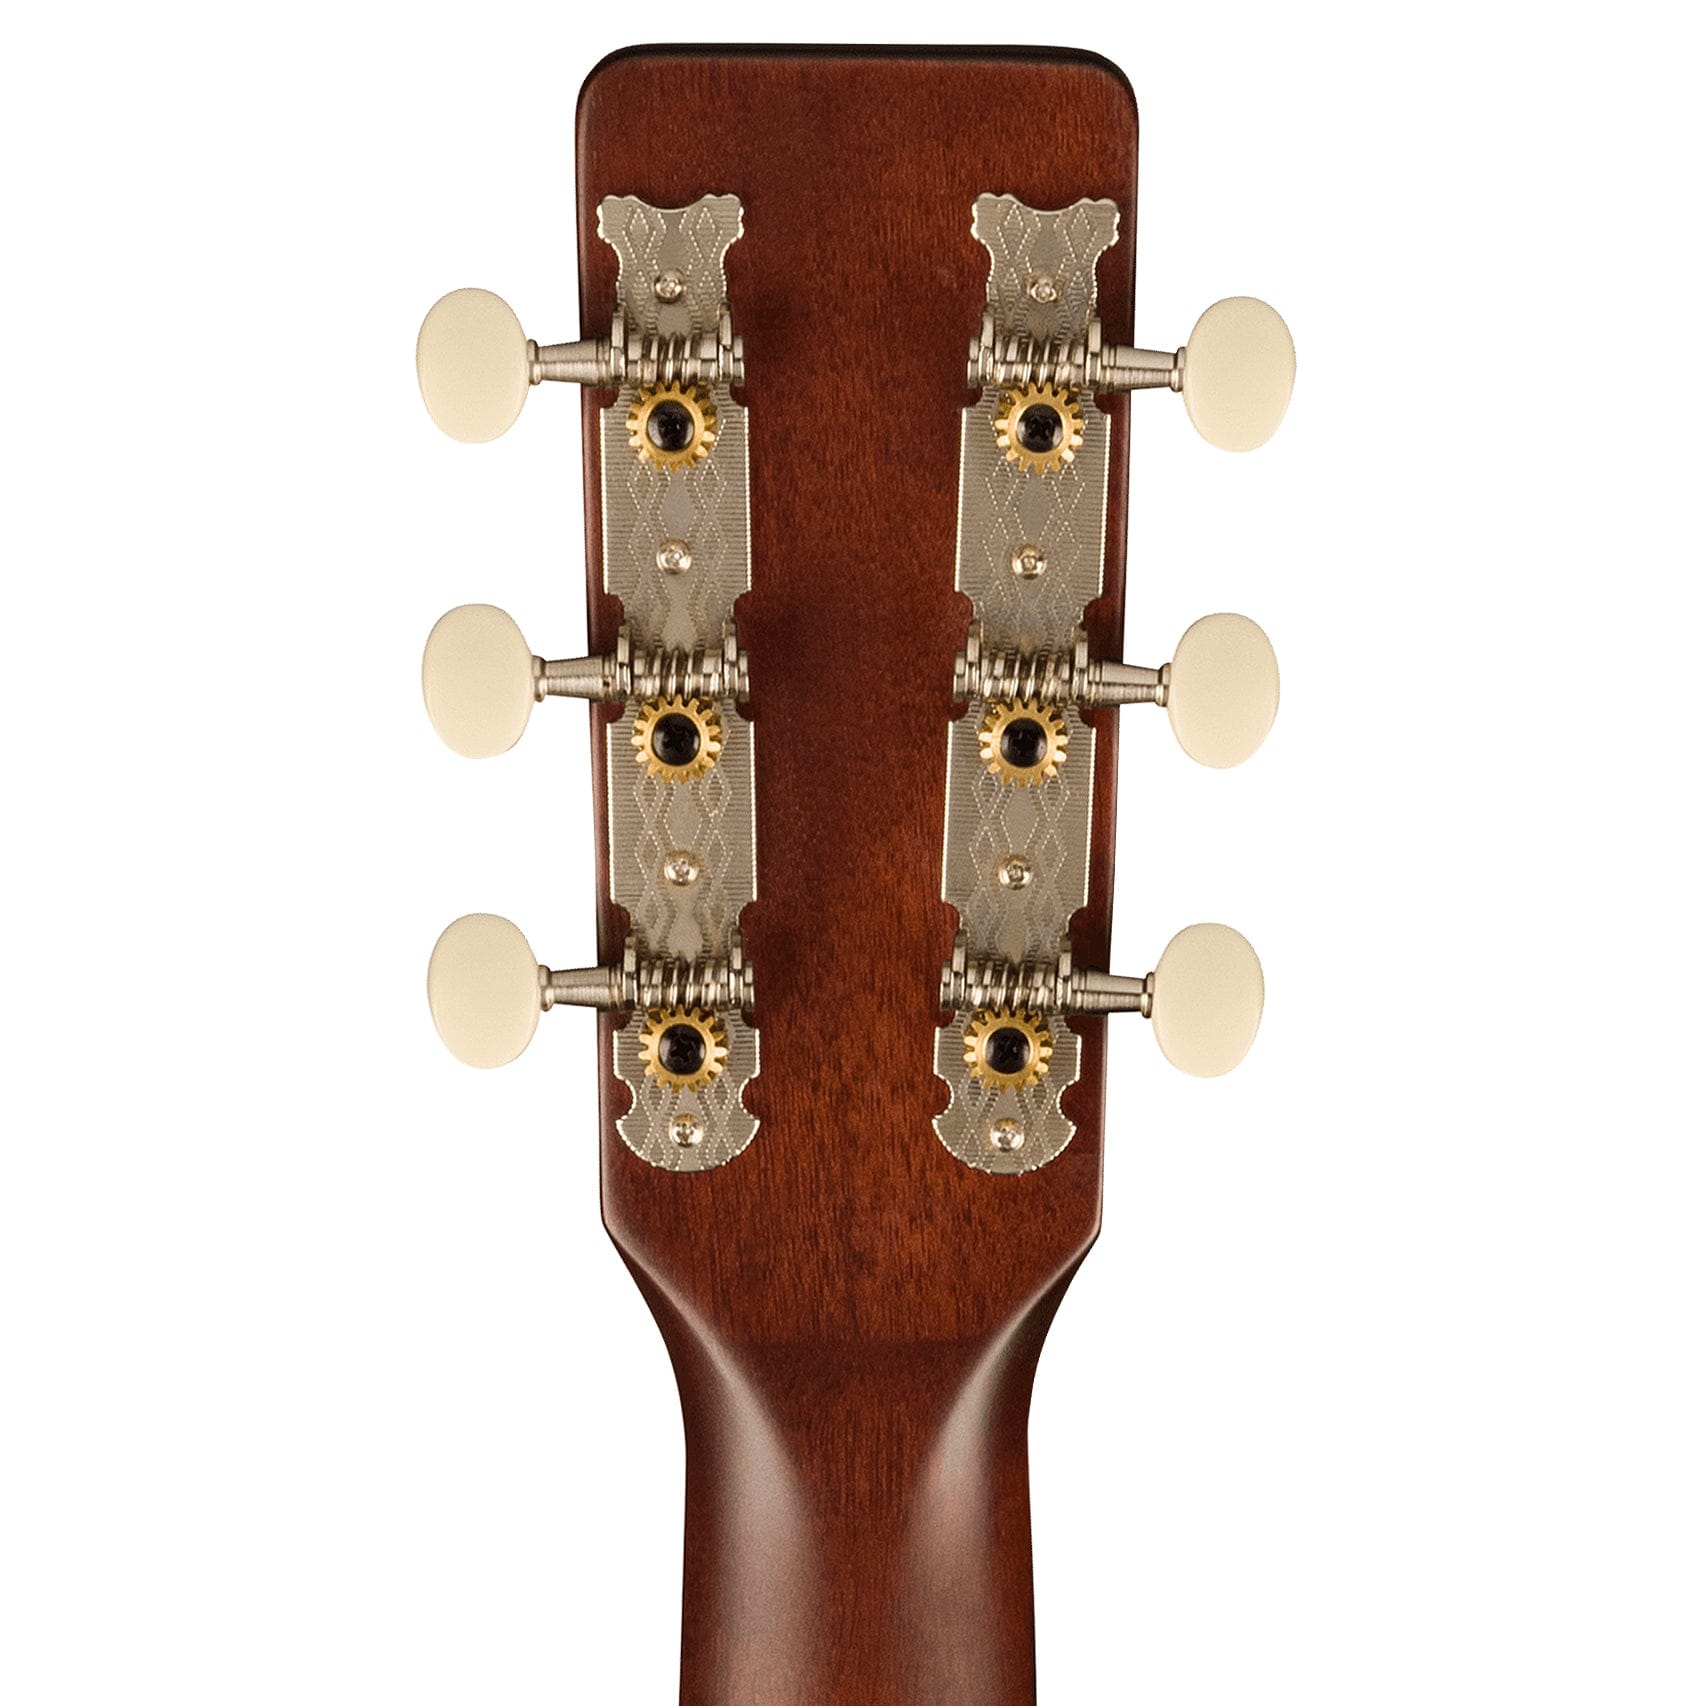 Gretsch Deltoluxe Parlor Acoustic Guitar Black Top Acoustic Guitars / Parlor